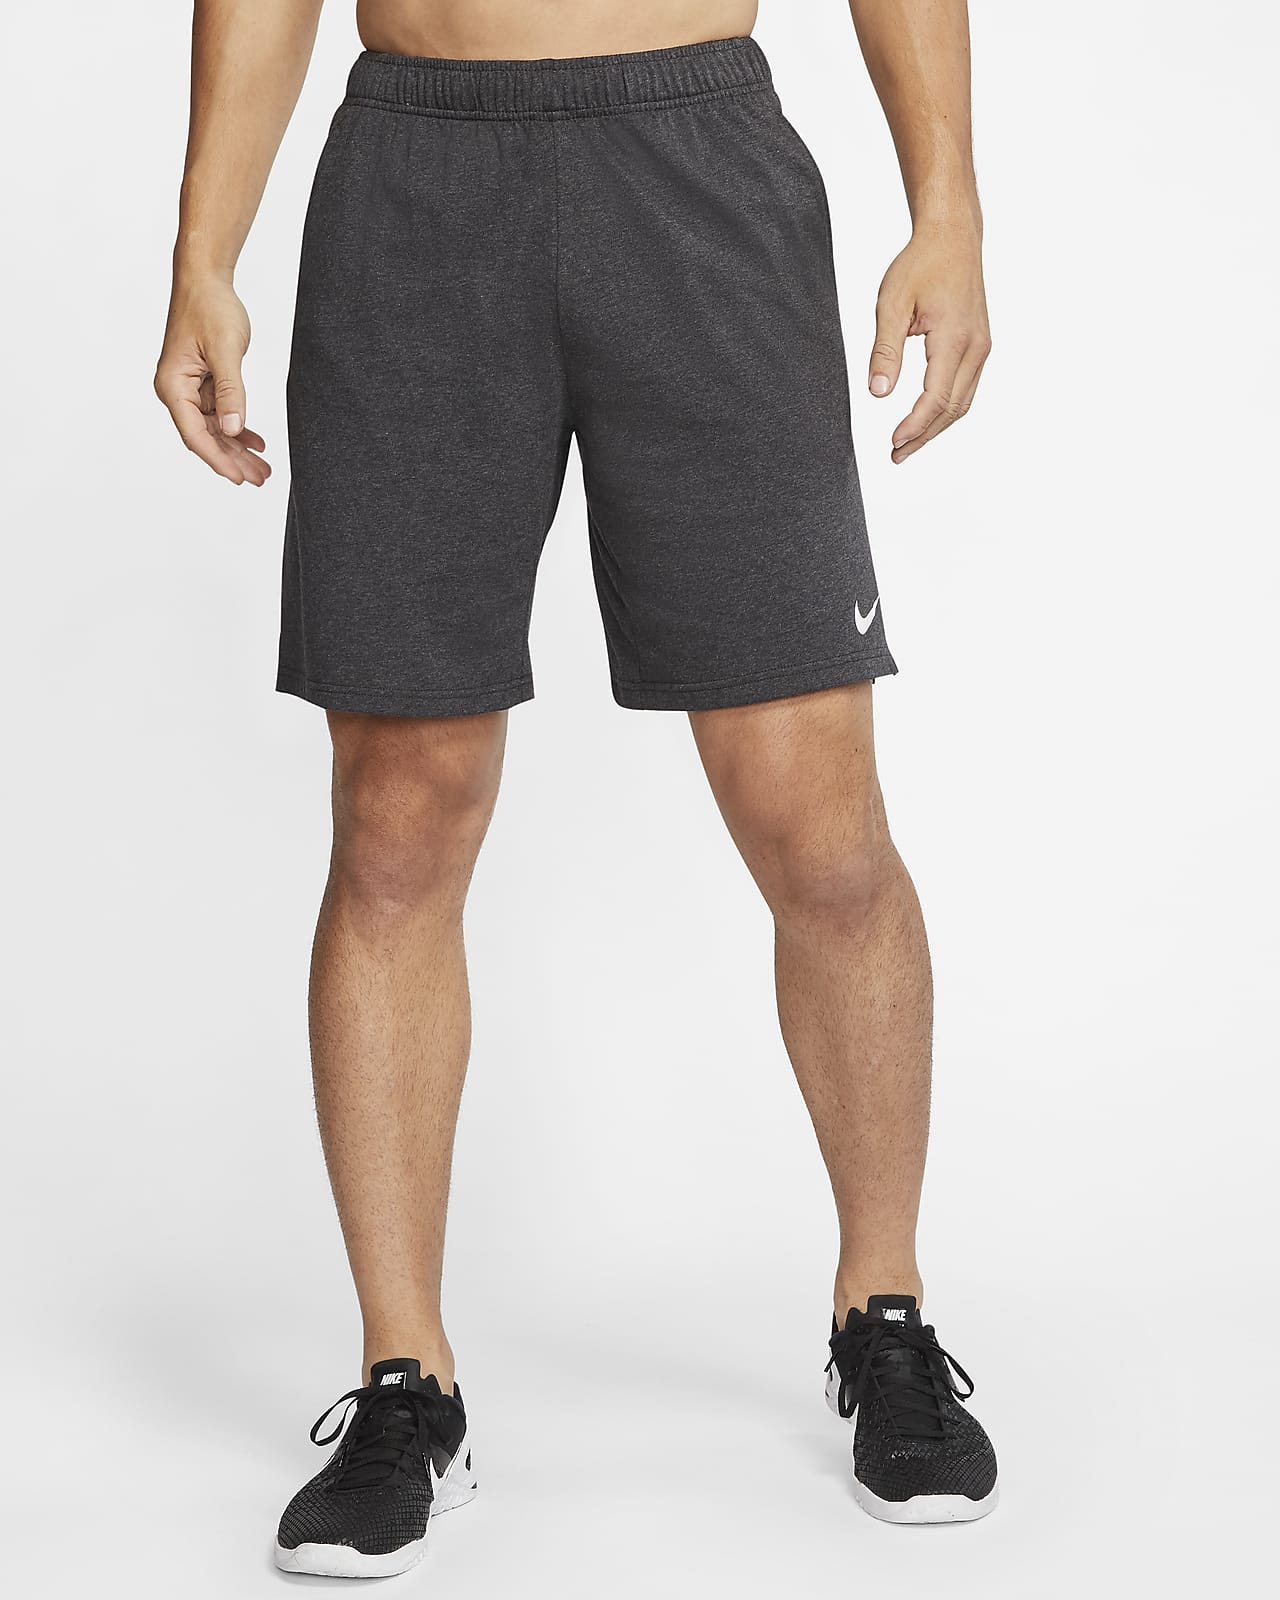 polilla Bolsa Miseria Nike Dri-FIT Men's Training Shorts. Nike LU